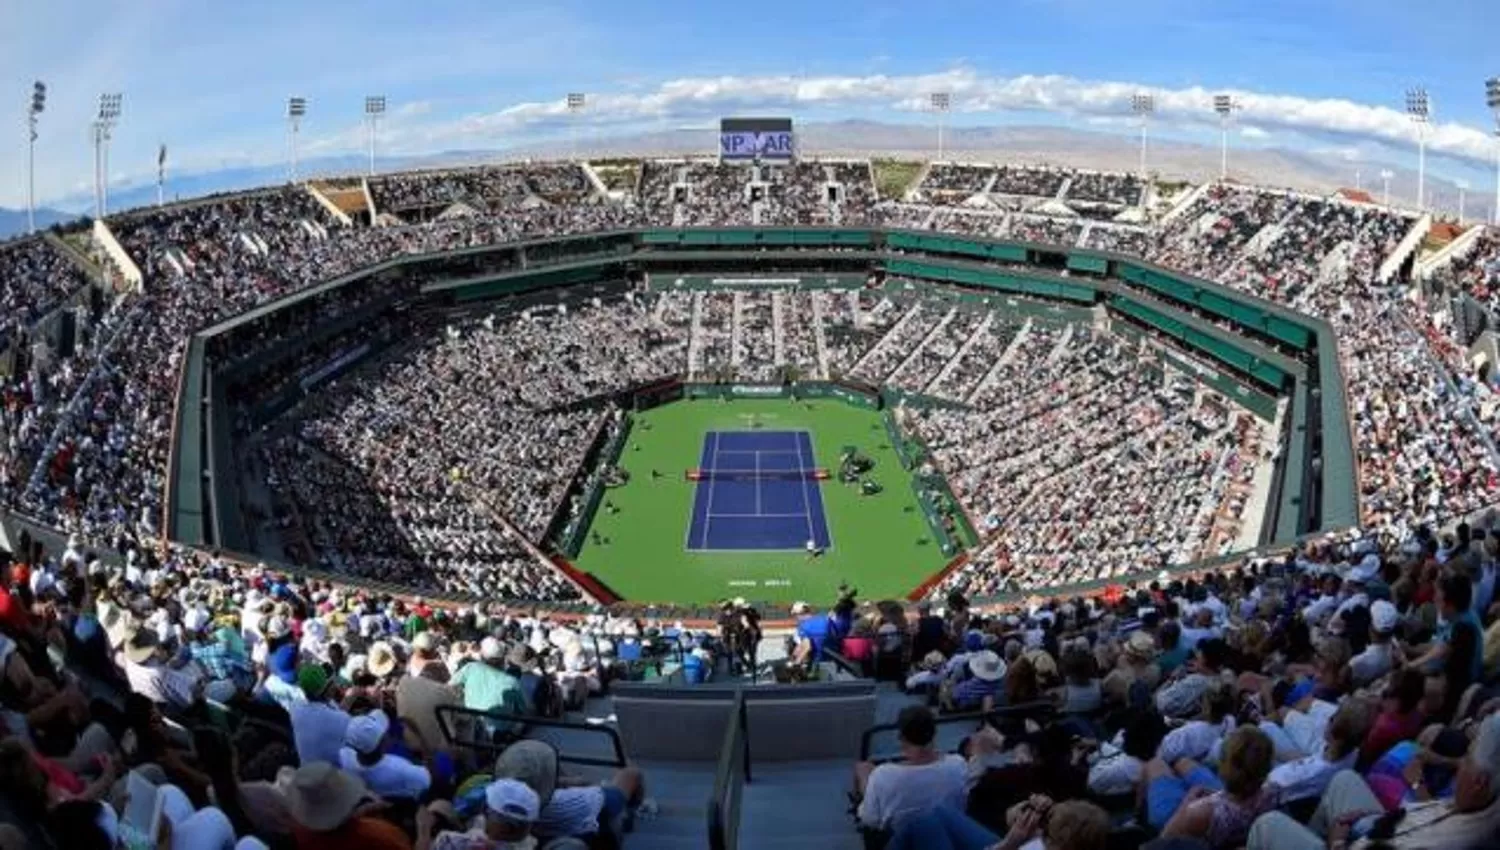 LA SEDE. El Indian Wells Tennis Garden es el segundo estadio abierto de tenis más grande del mundo, con capacidad para 16.000 espectadores.